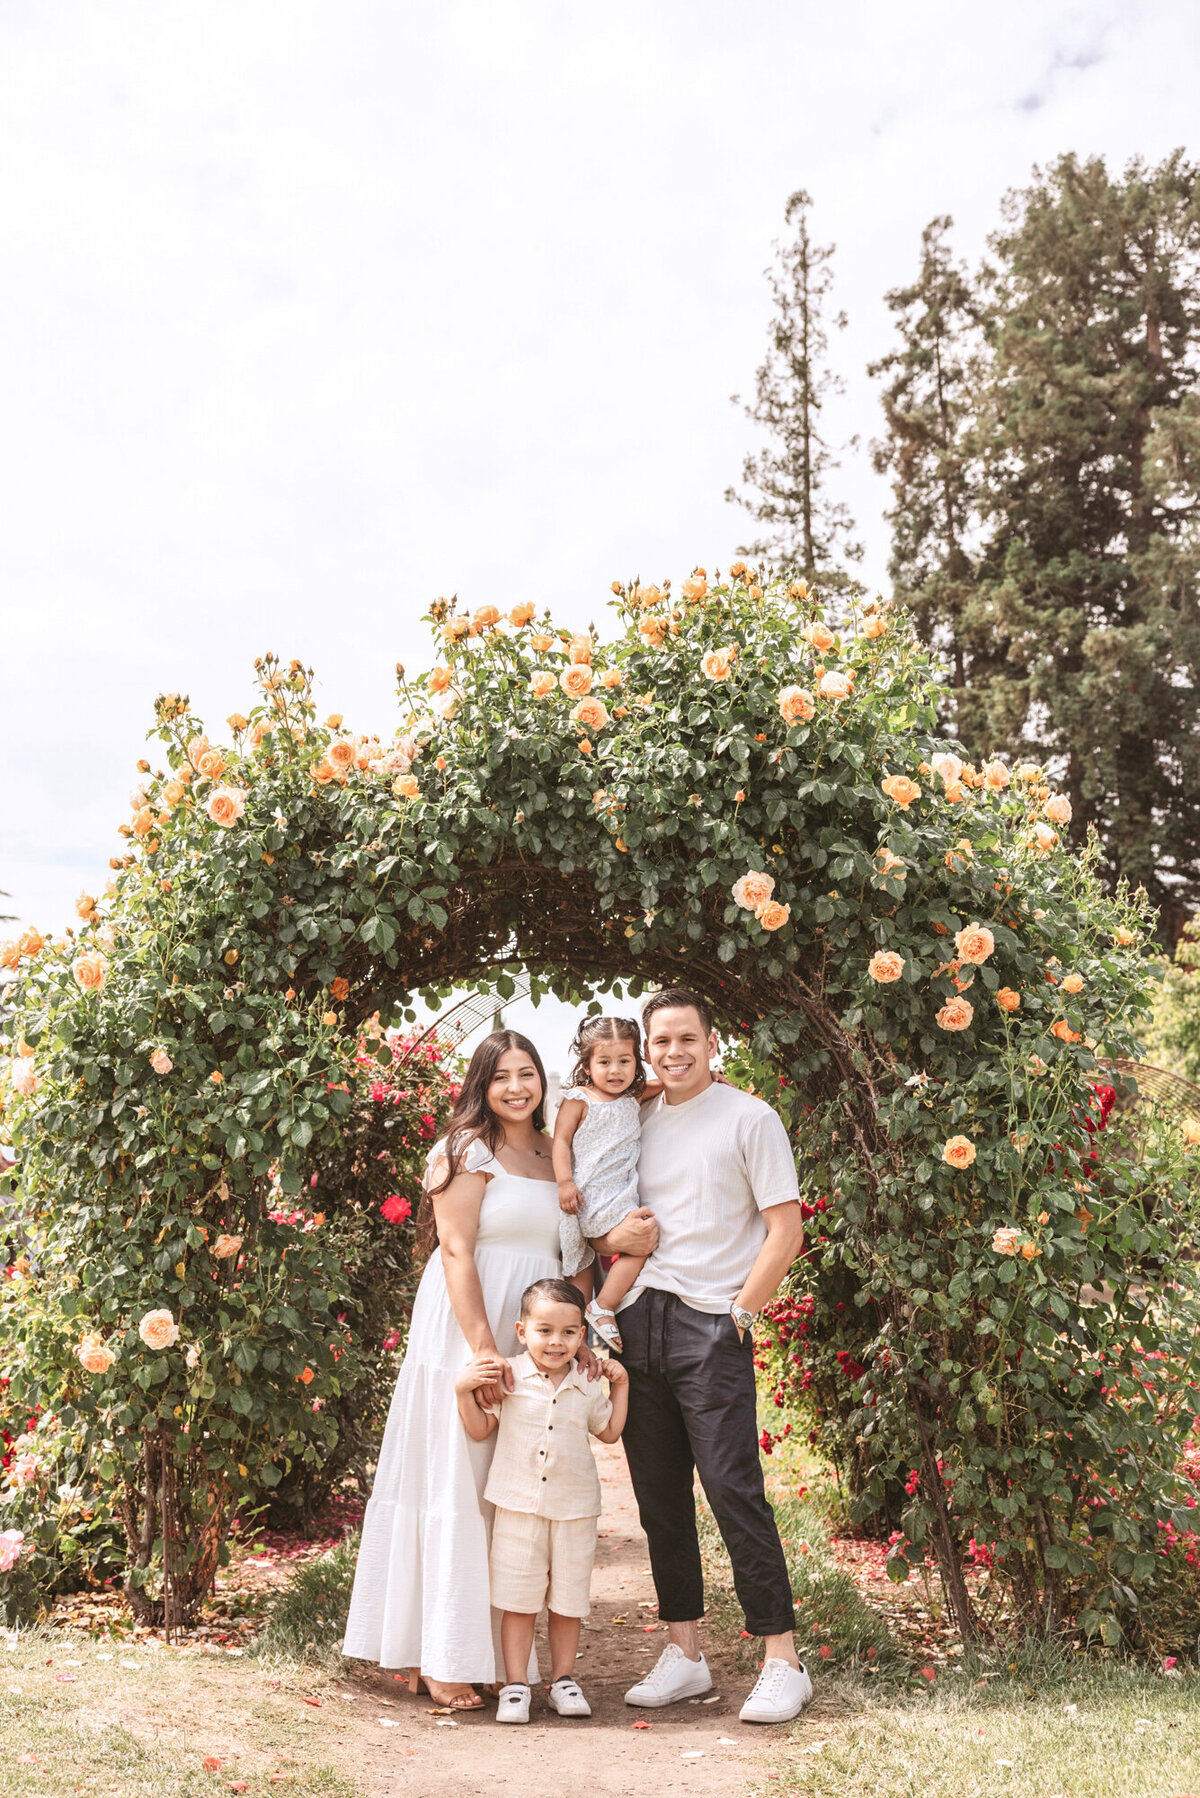 Citlaly Galvez-Family-San Jose Rose Garden-Emily Pillon Photography-S-052823-1